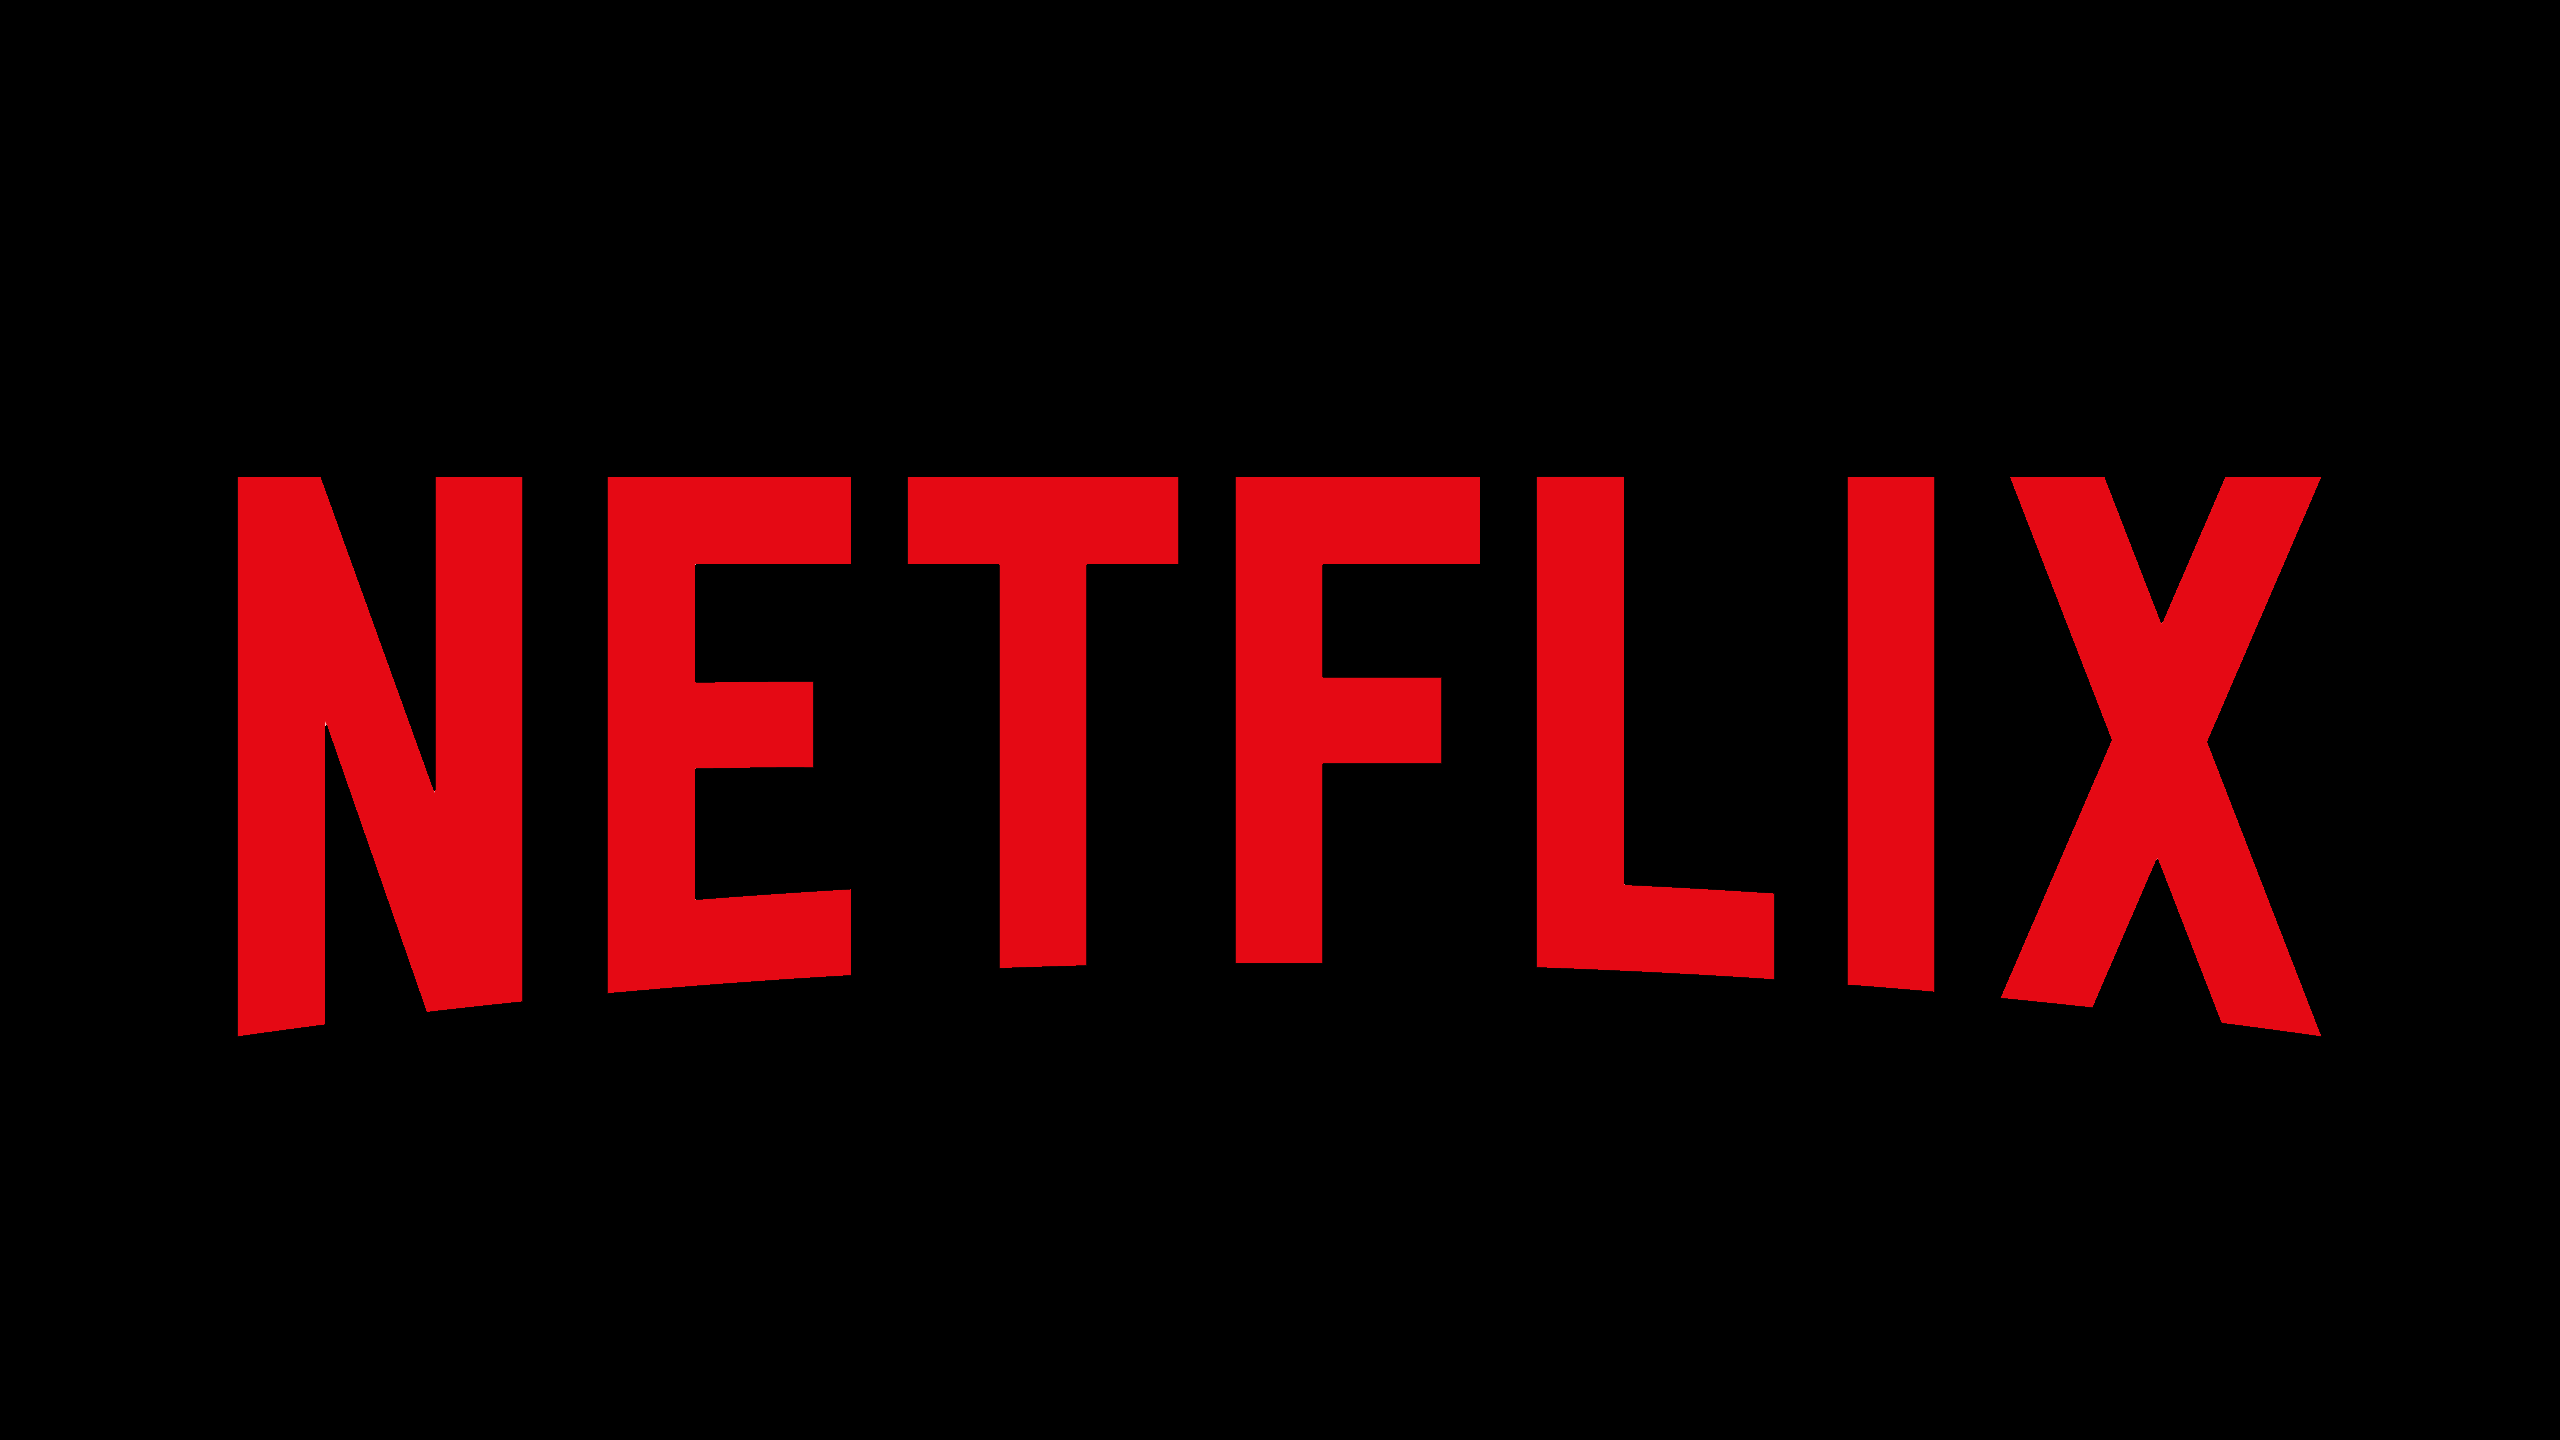 Netflix Dil Değiştirme